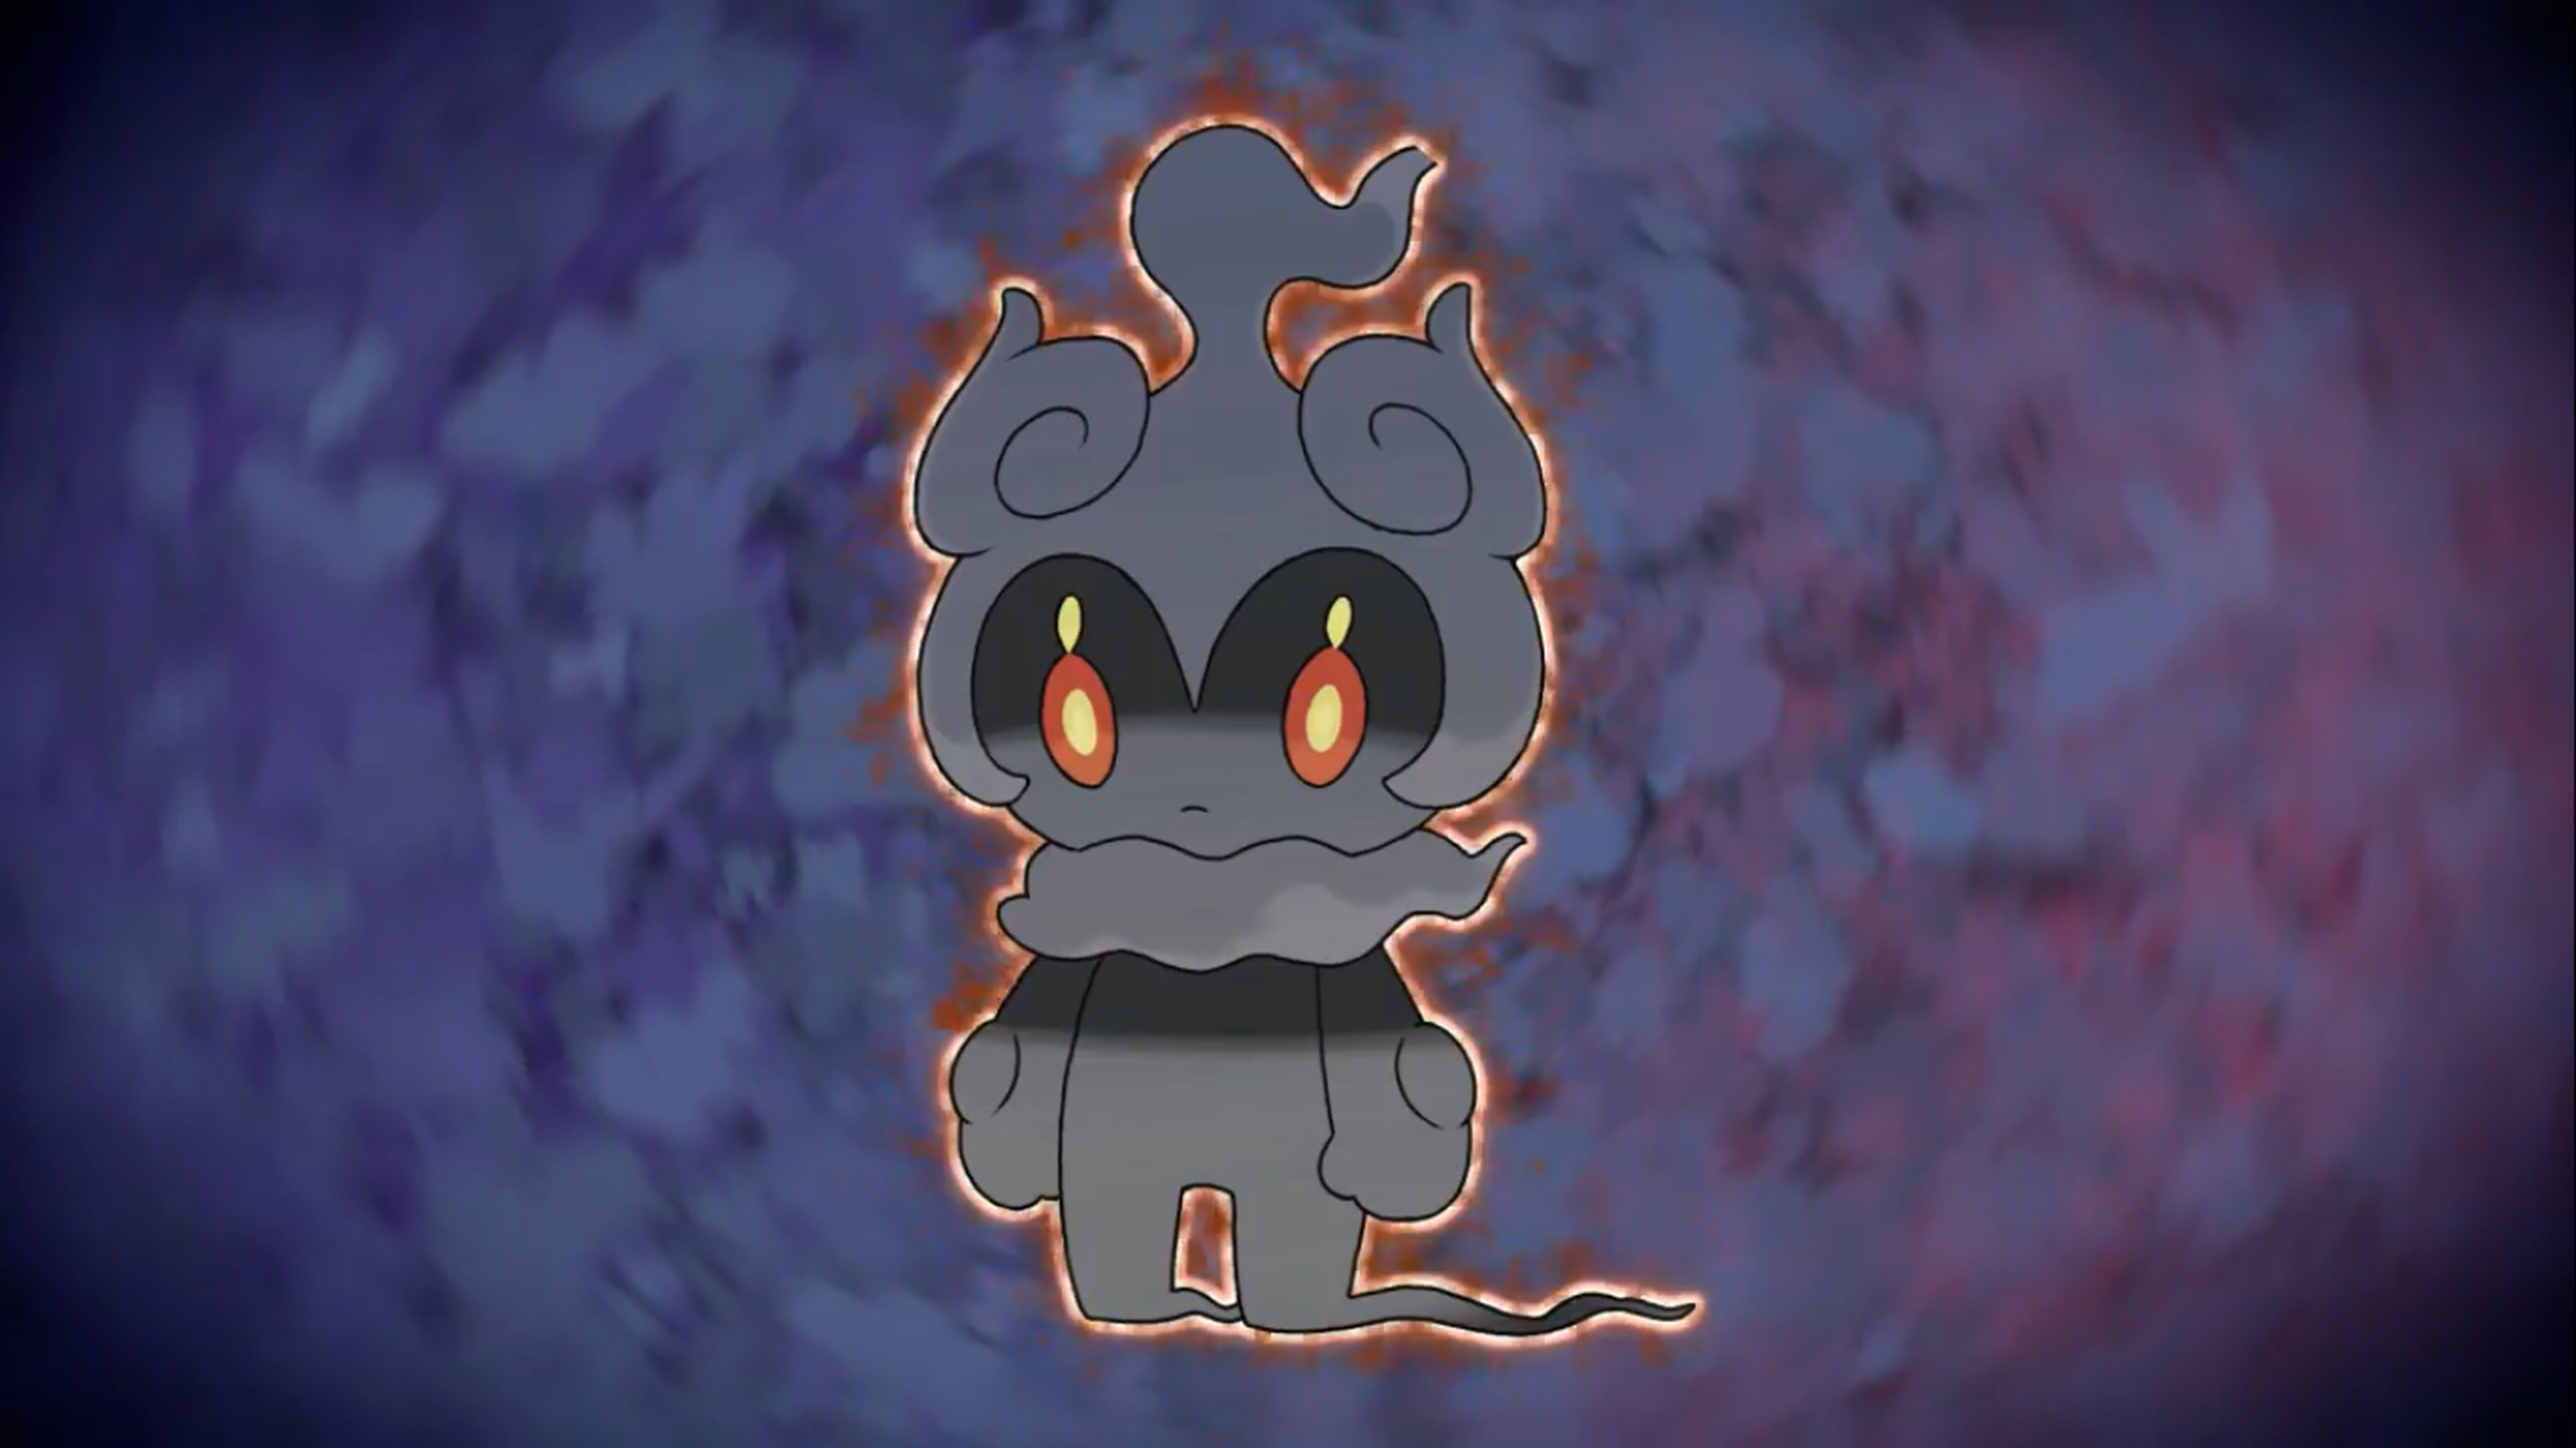 Marshadow - Nuevo Pokémon singular descubierto en Pokémon Sol y Pokémon Luna